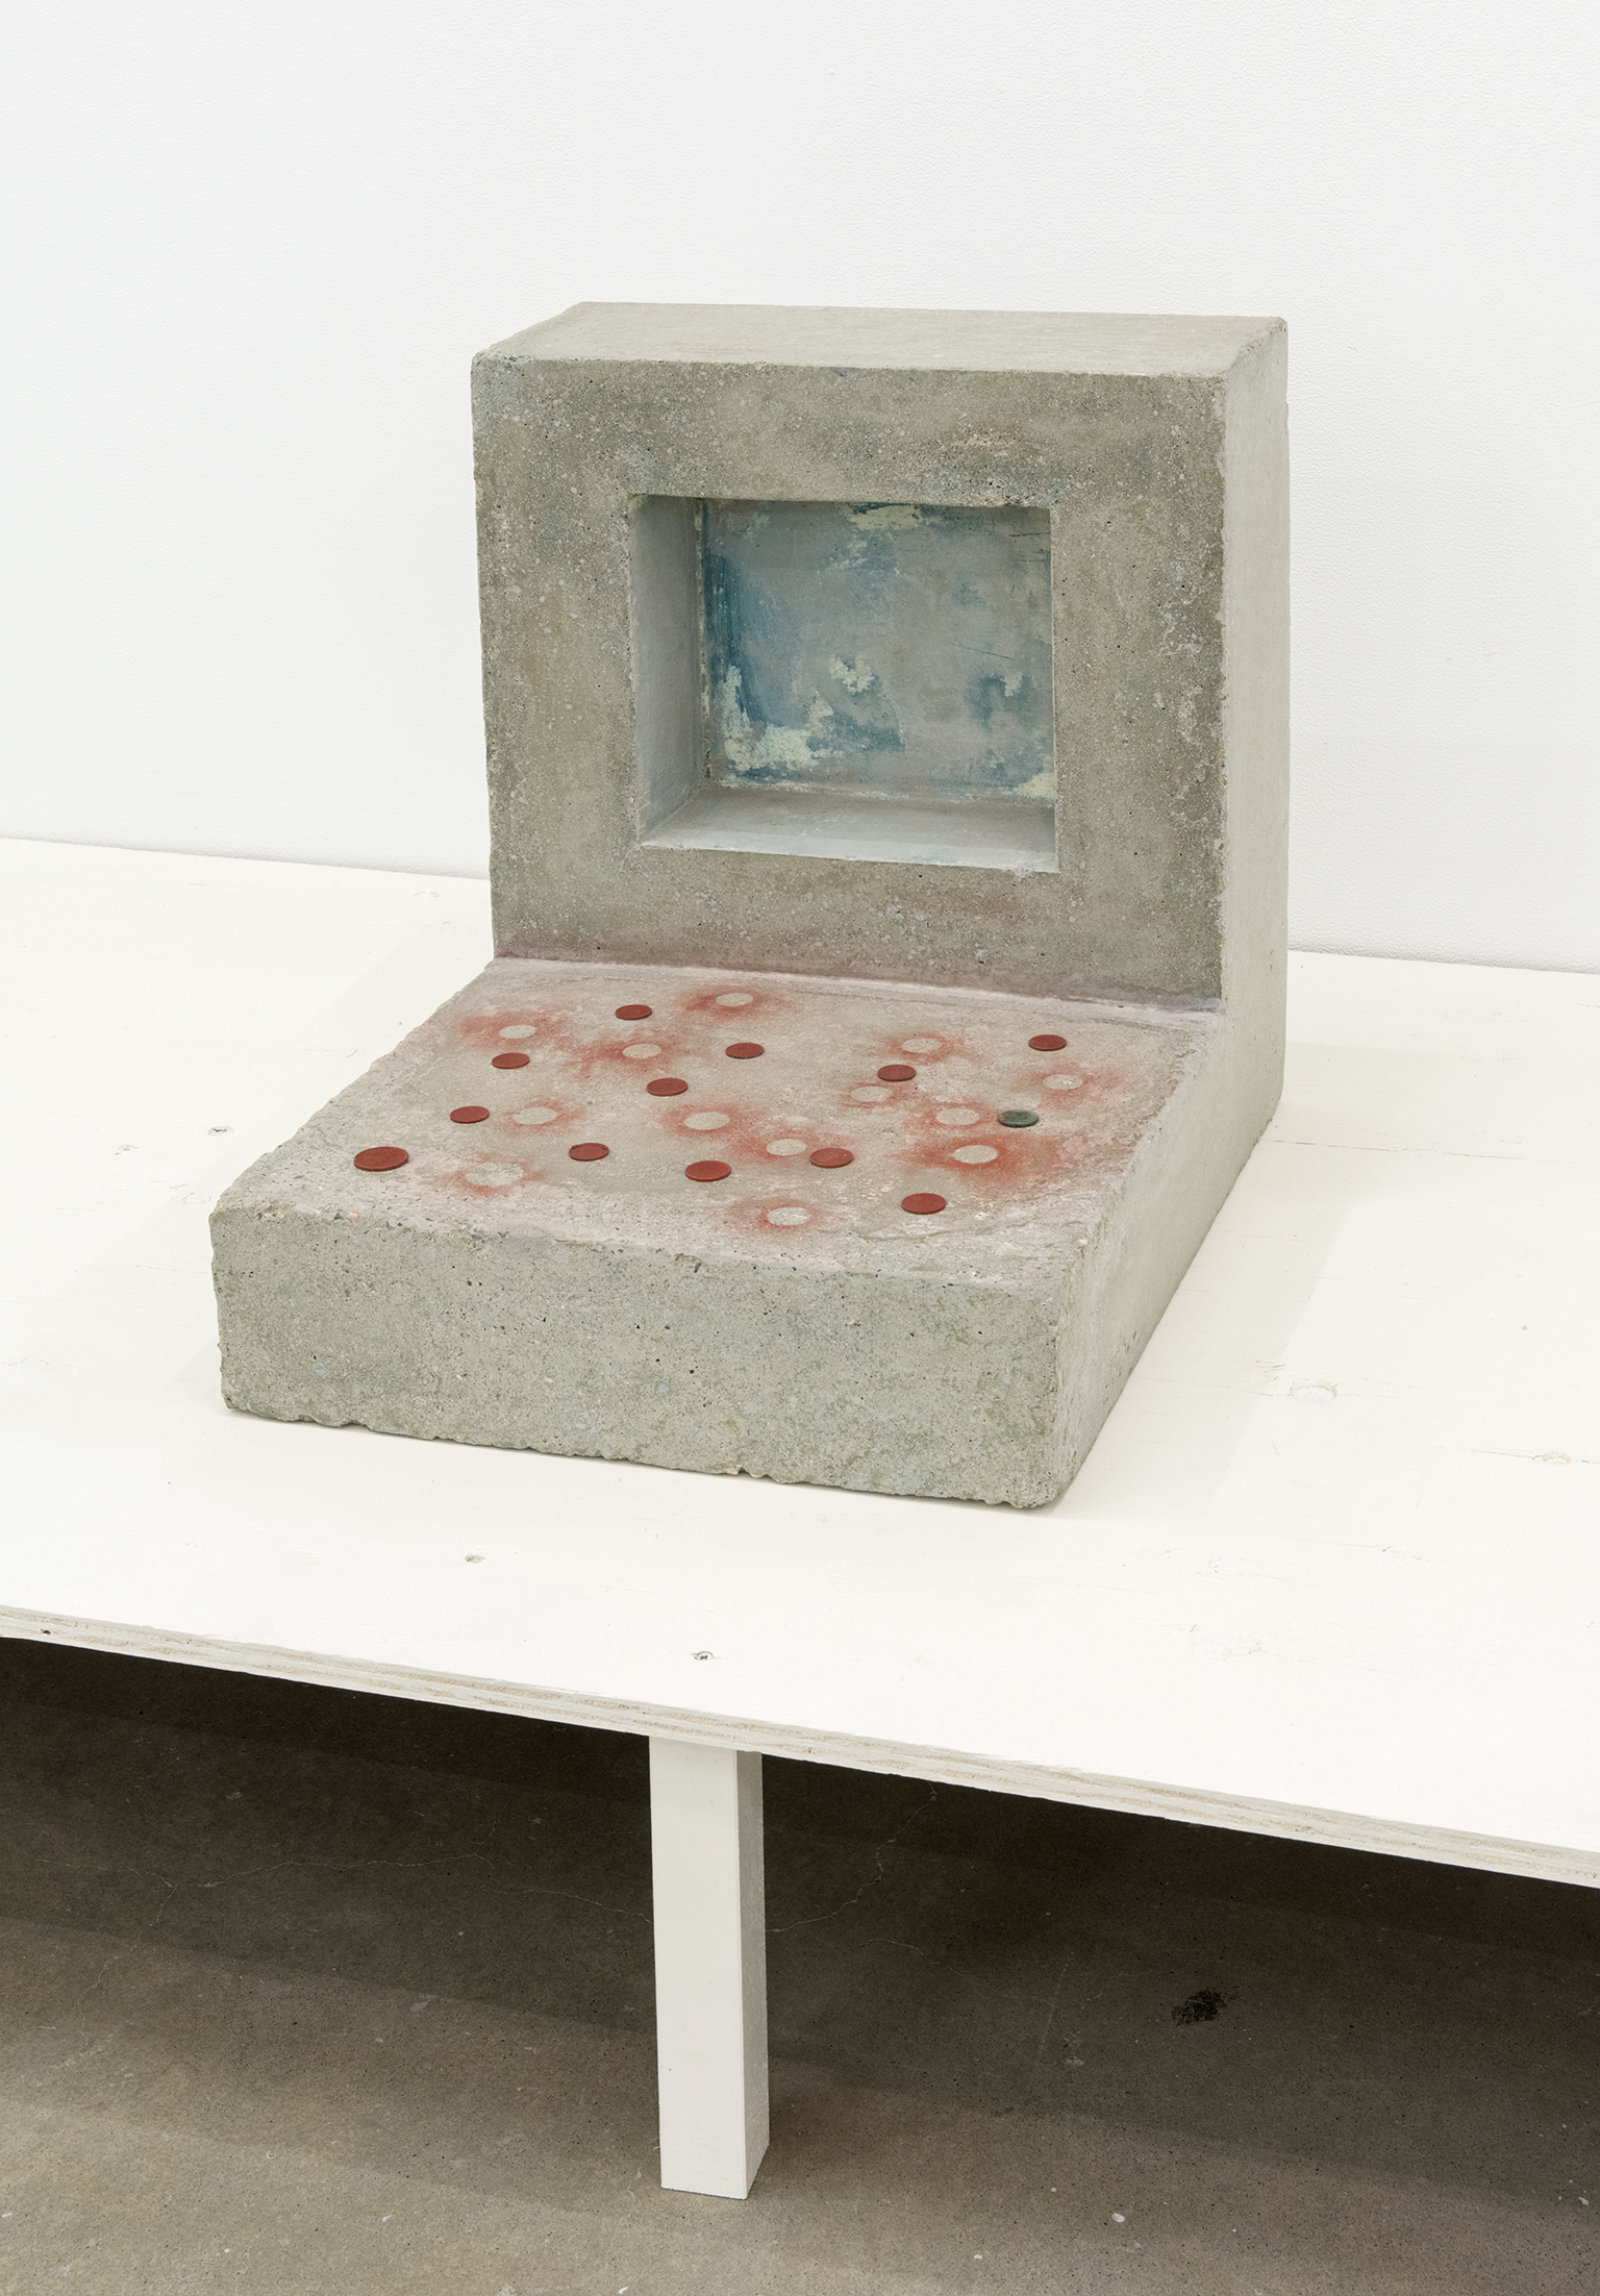 Ashes Withyman, PC-01, 2013, concrete, coins, paint, verdigris, 19 x 16 x 20 in. (47 x 41 x 50 cm)  